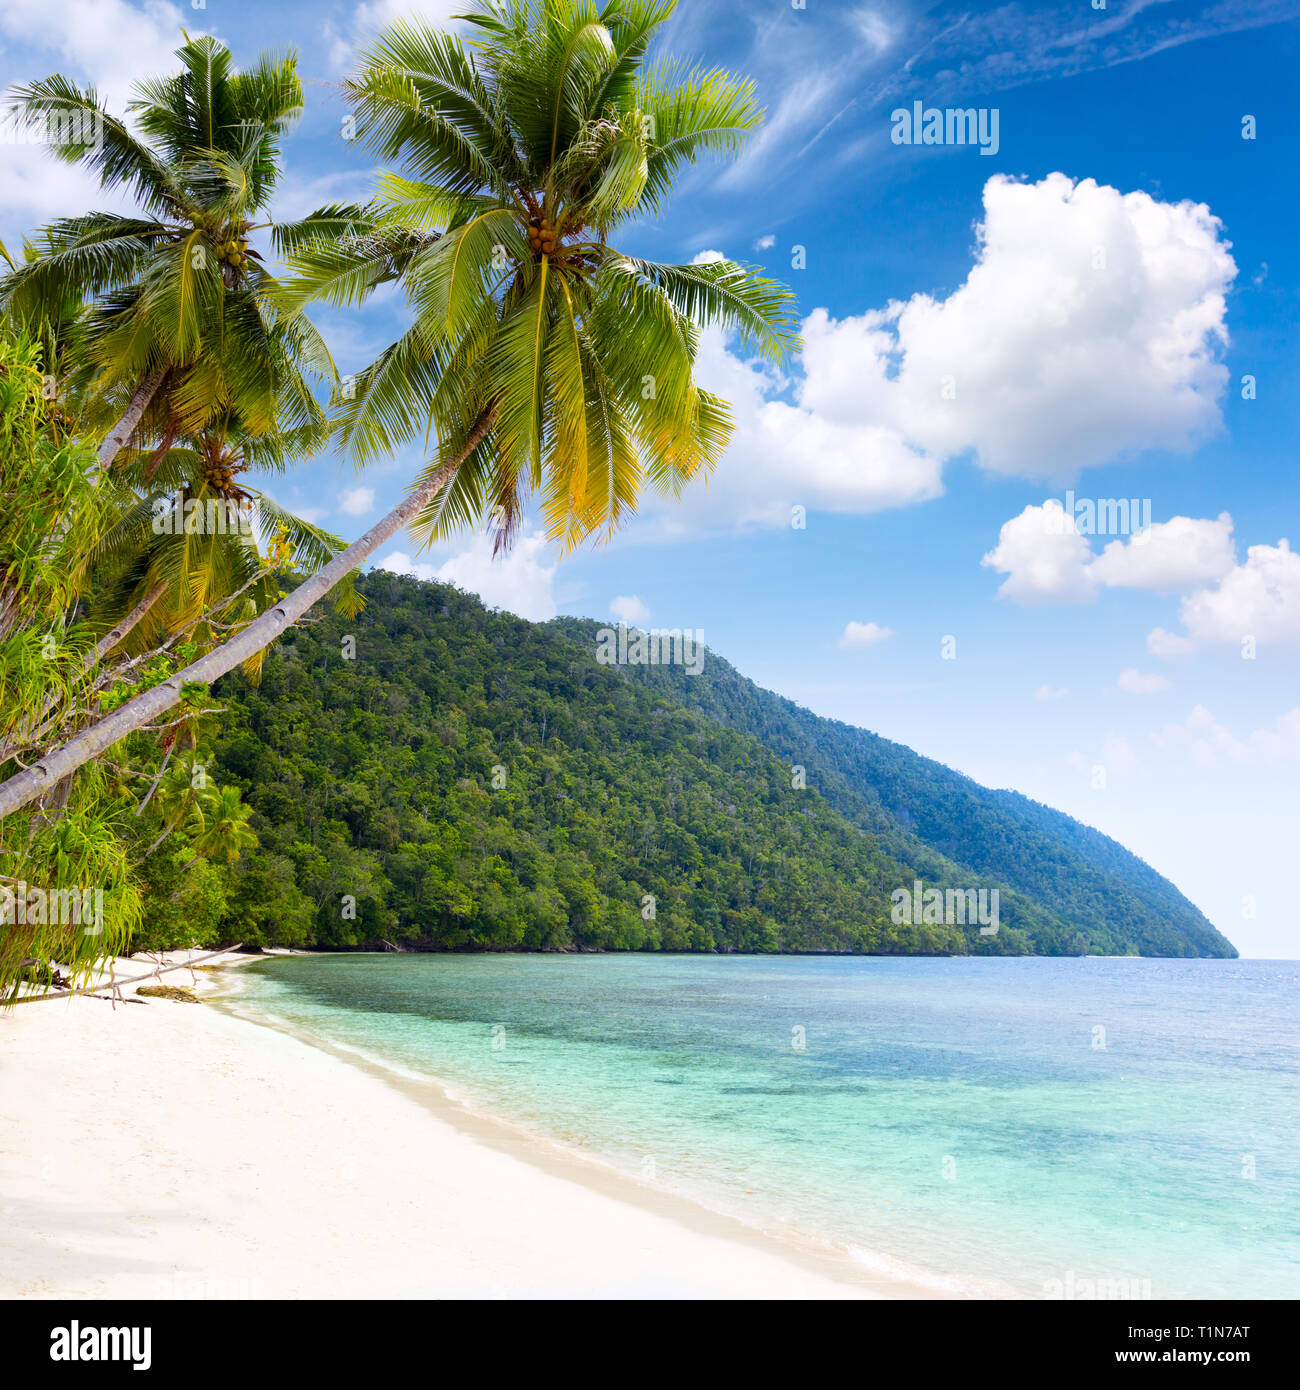 Paesaggio Idillyc di Tropical Island Beach - mare caldo, palme, cielo blu e nuvole bianche - Isola di area Pasific Foto Stock